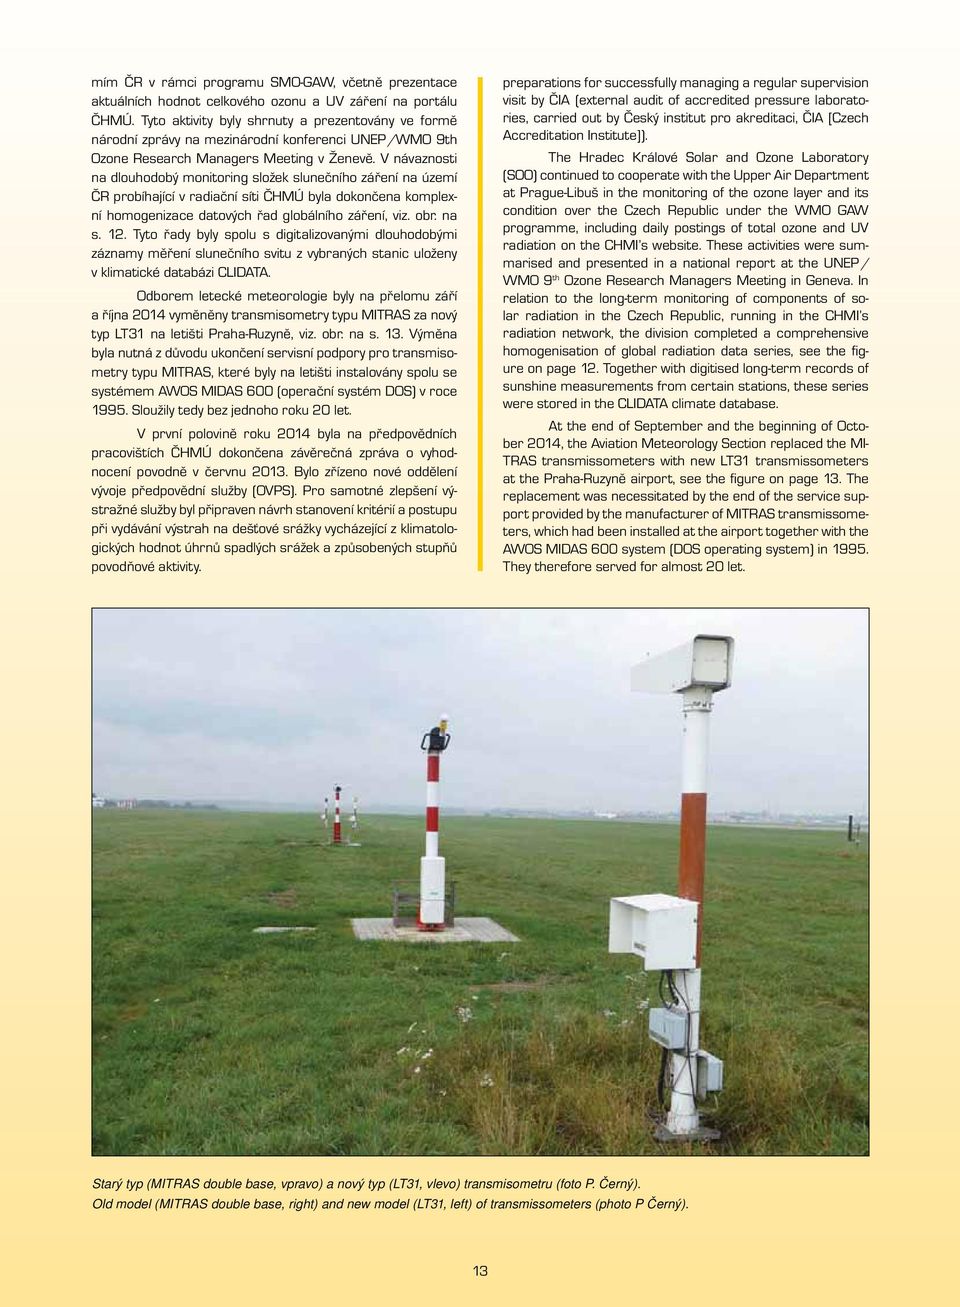 V návaznosti na dlouhodobý monitoring složek slunečního záření na území ČR probíhající v radiační síti ČHMÚ byla dokončena komplexní homogenizace datových řad globálního záření, viz. obr. na s. 12.